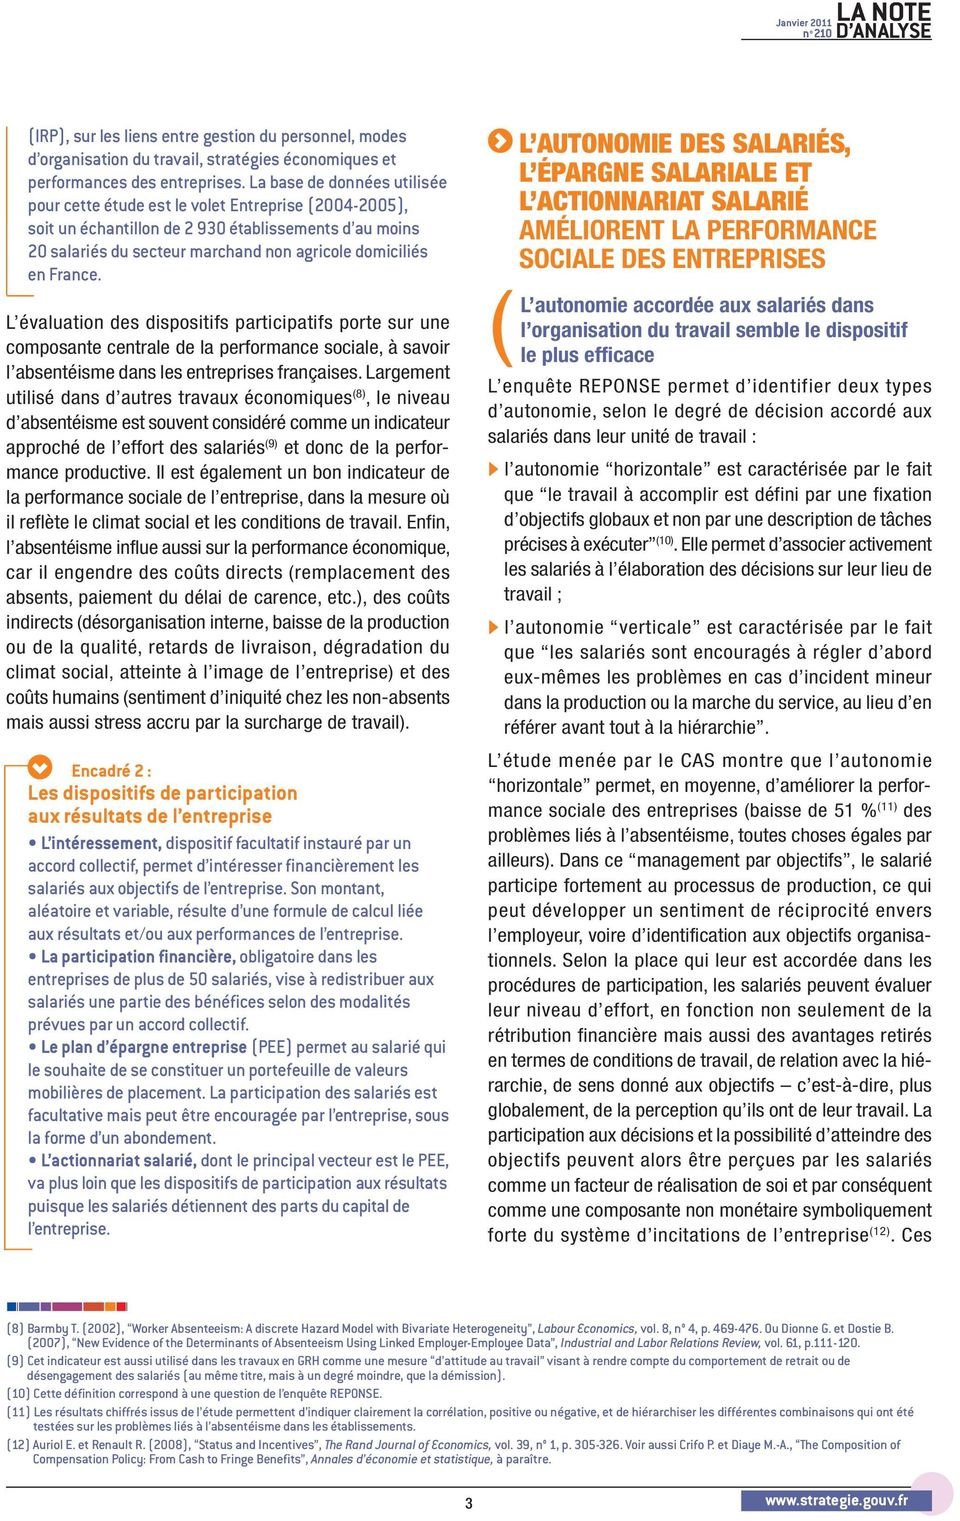 France. L évaluation des dispositifs participatifs porte sur une composante centrale de la performance sociale, à savoir l absentéisme dans les entreprises françaises.